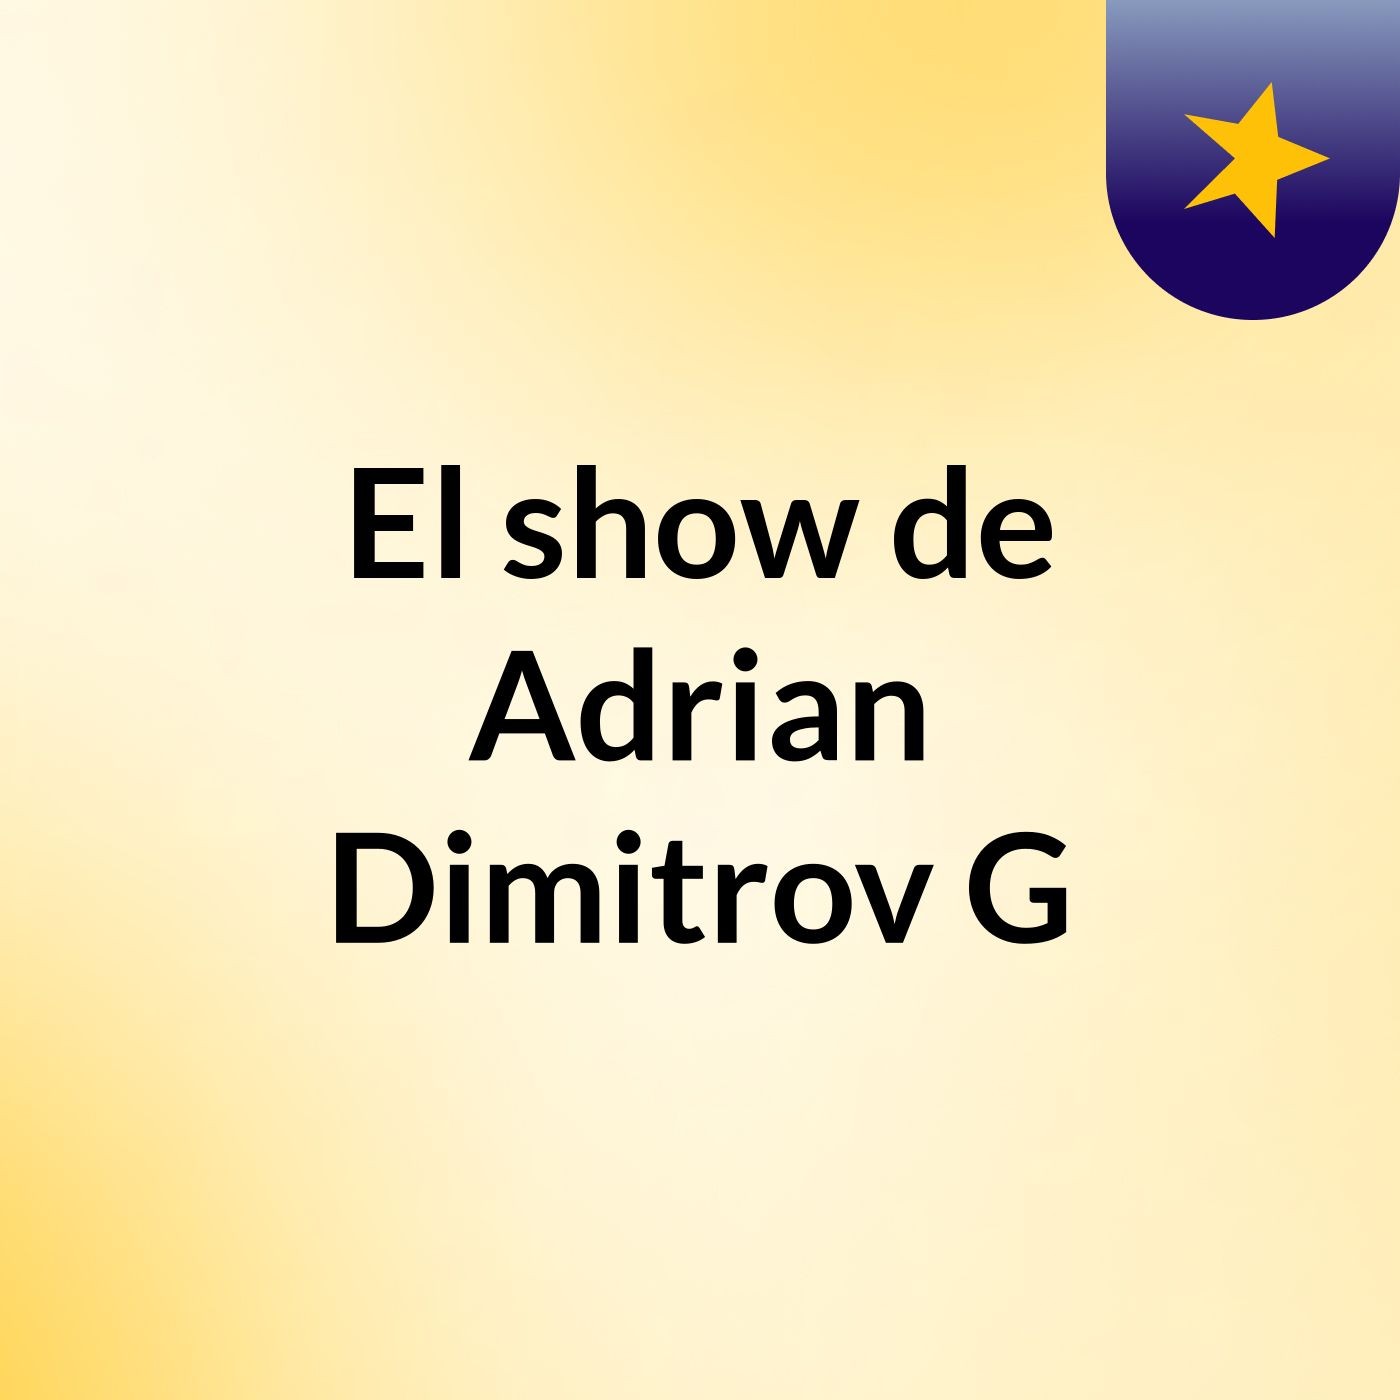 El show de Adrian Dimitrov G